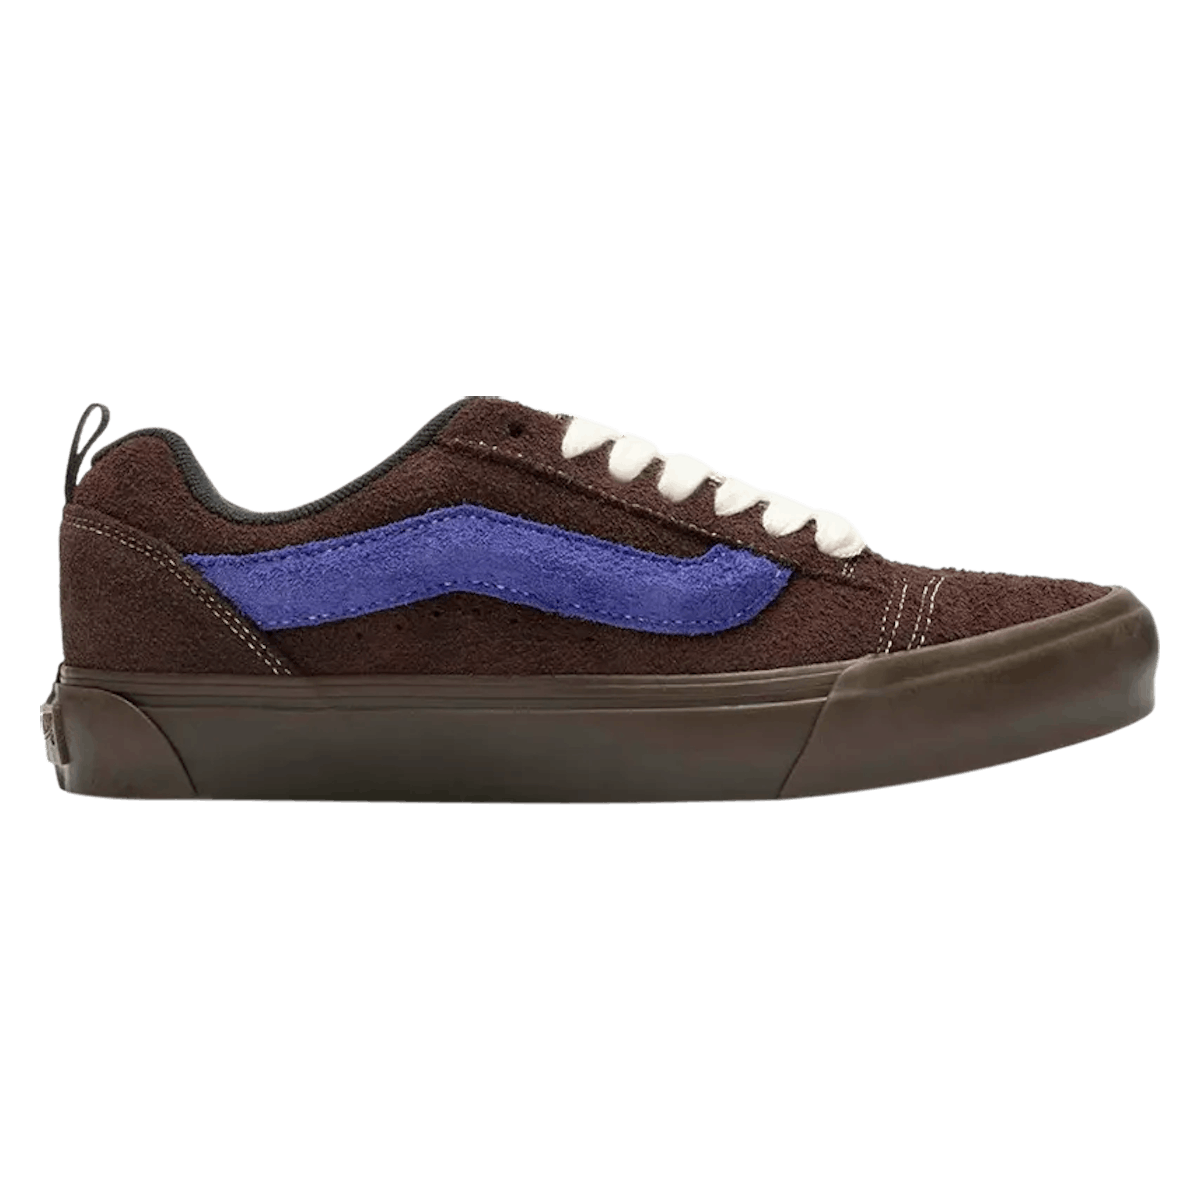 Sneakersnstuff x Vans Knu-Skool "Brown Purple"